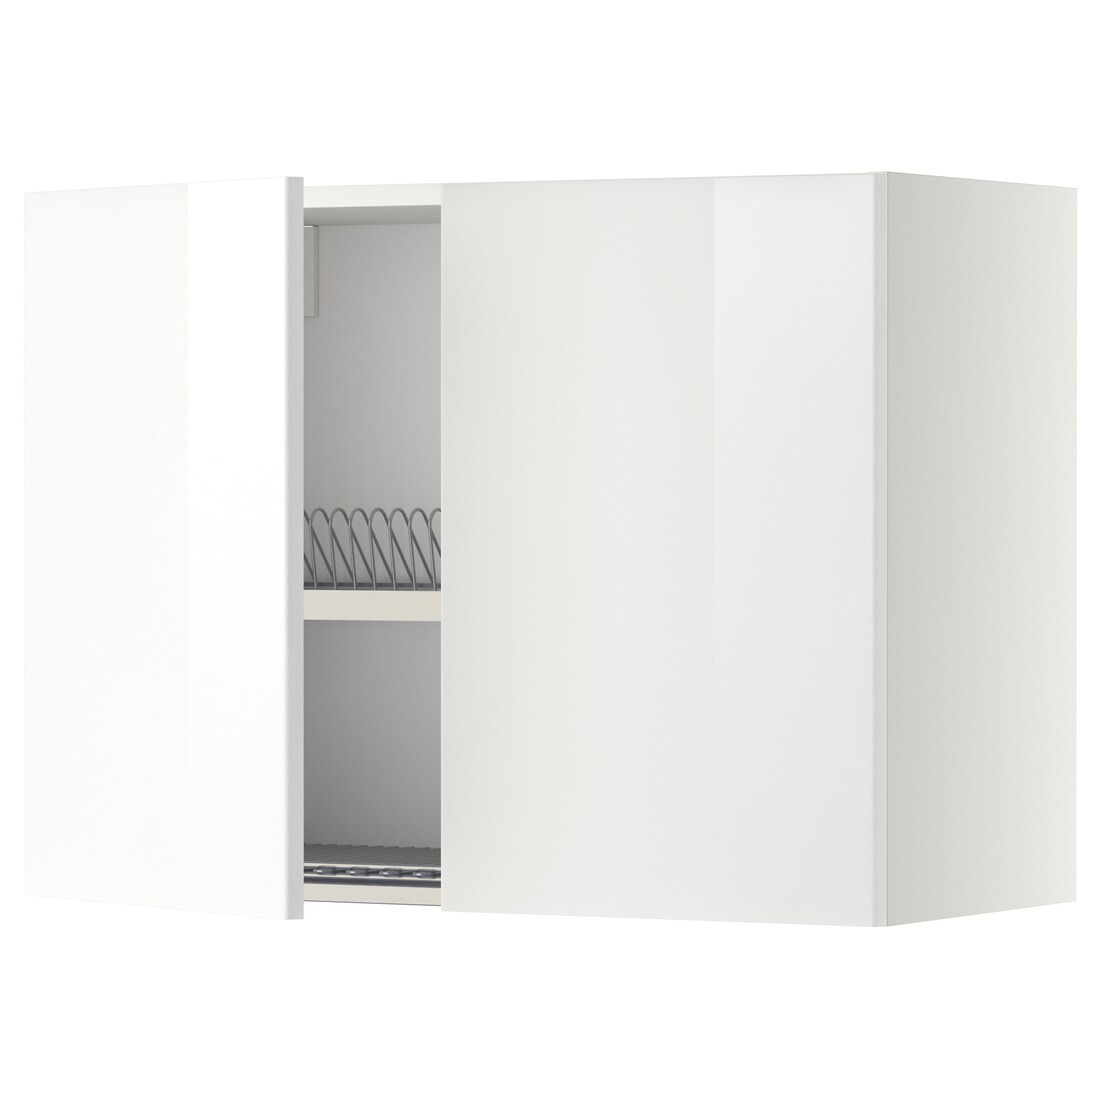 METOD МЕТОД Навесной шкаф с посудной сушилкой / 2 дверцы, белый / Ringhult белый, 80x60 см